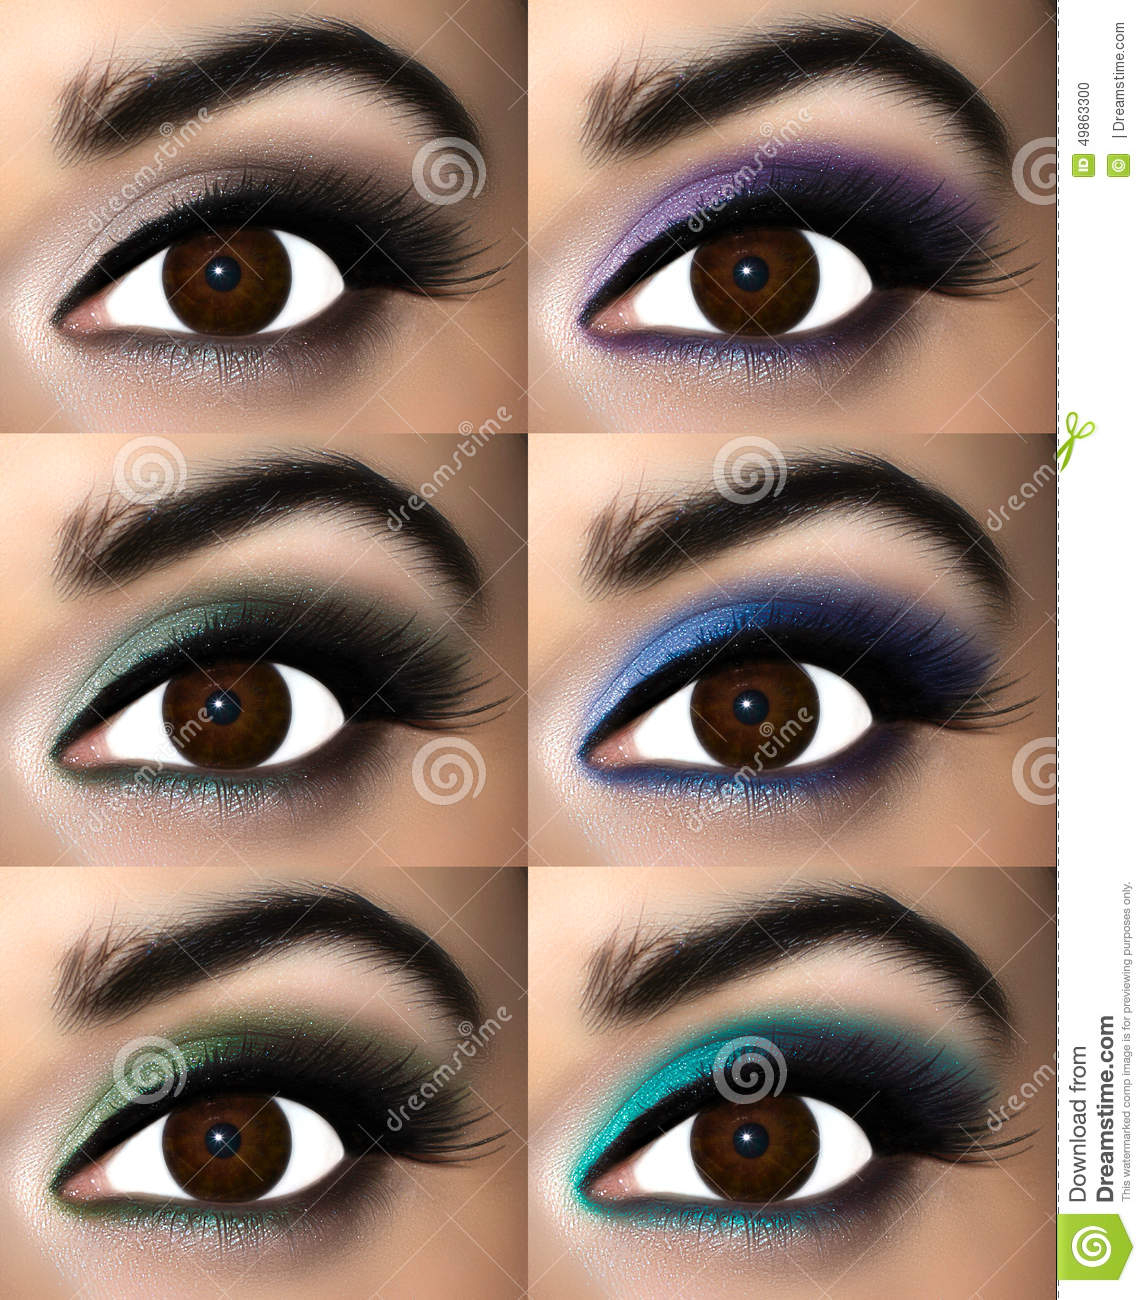 Best Makeup For Brown Eyes Best Eyeshadow Colors For Brown Eyes